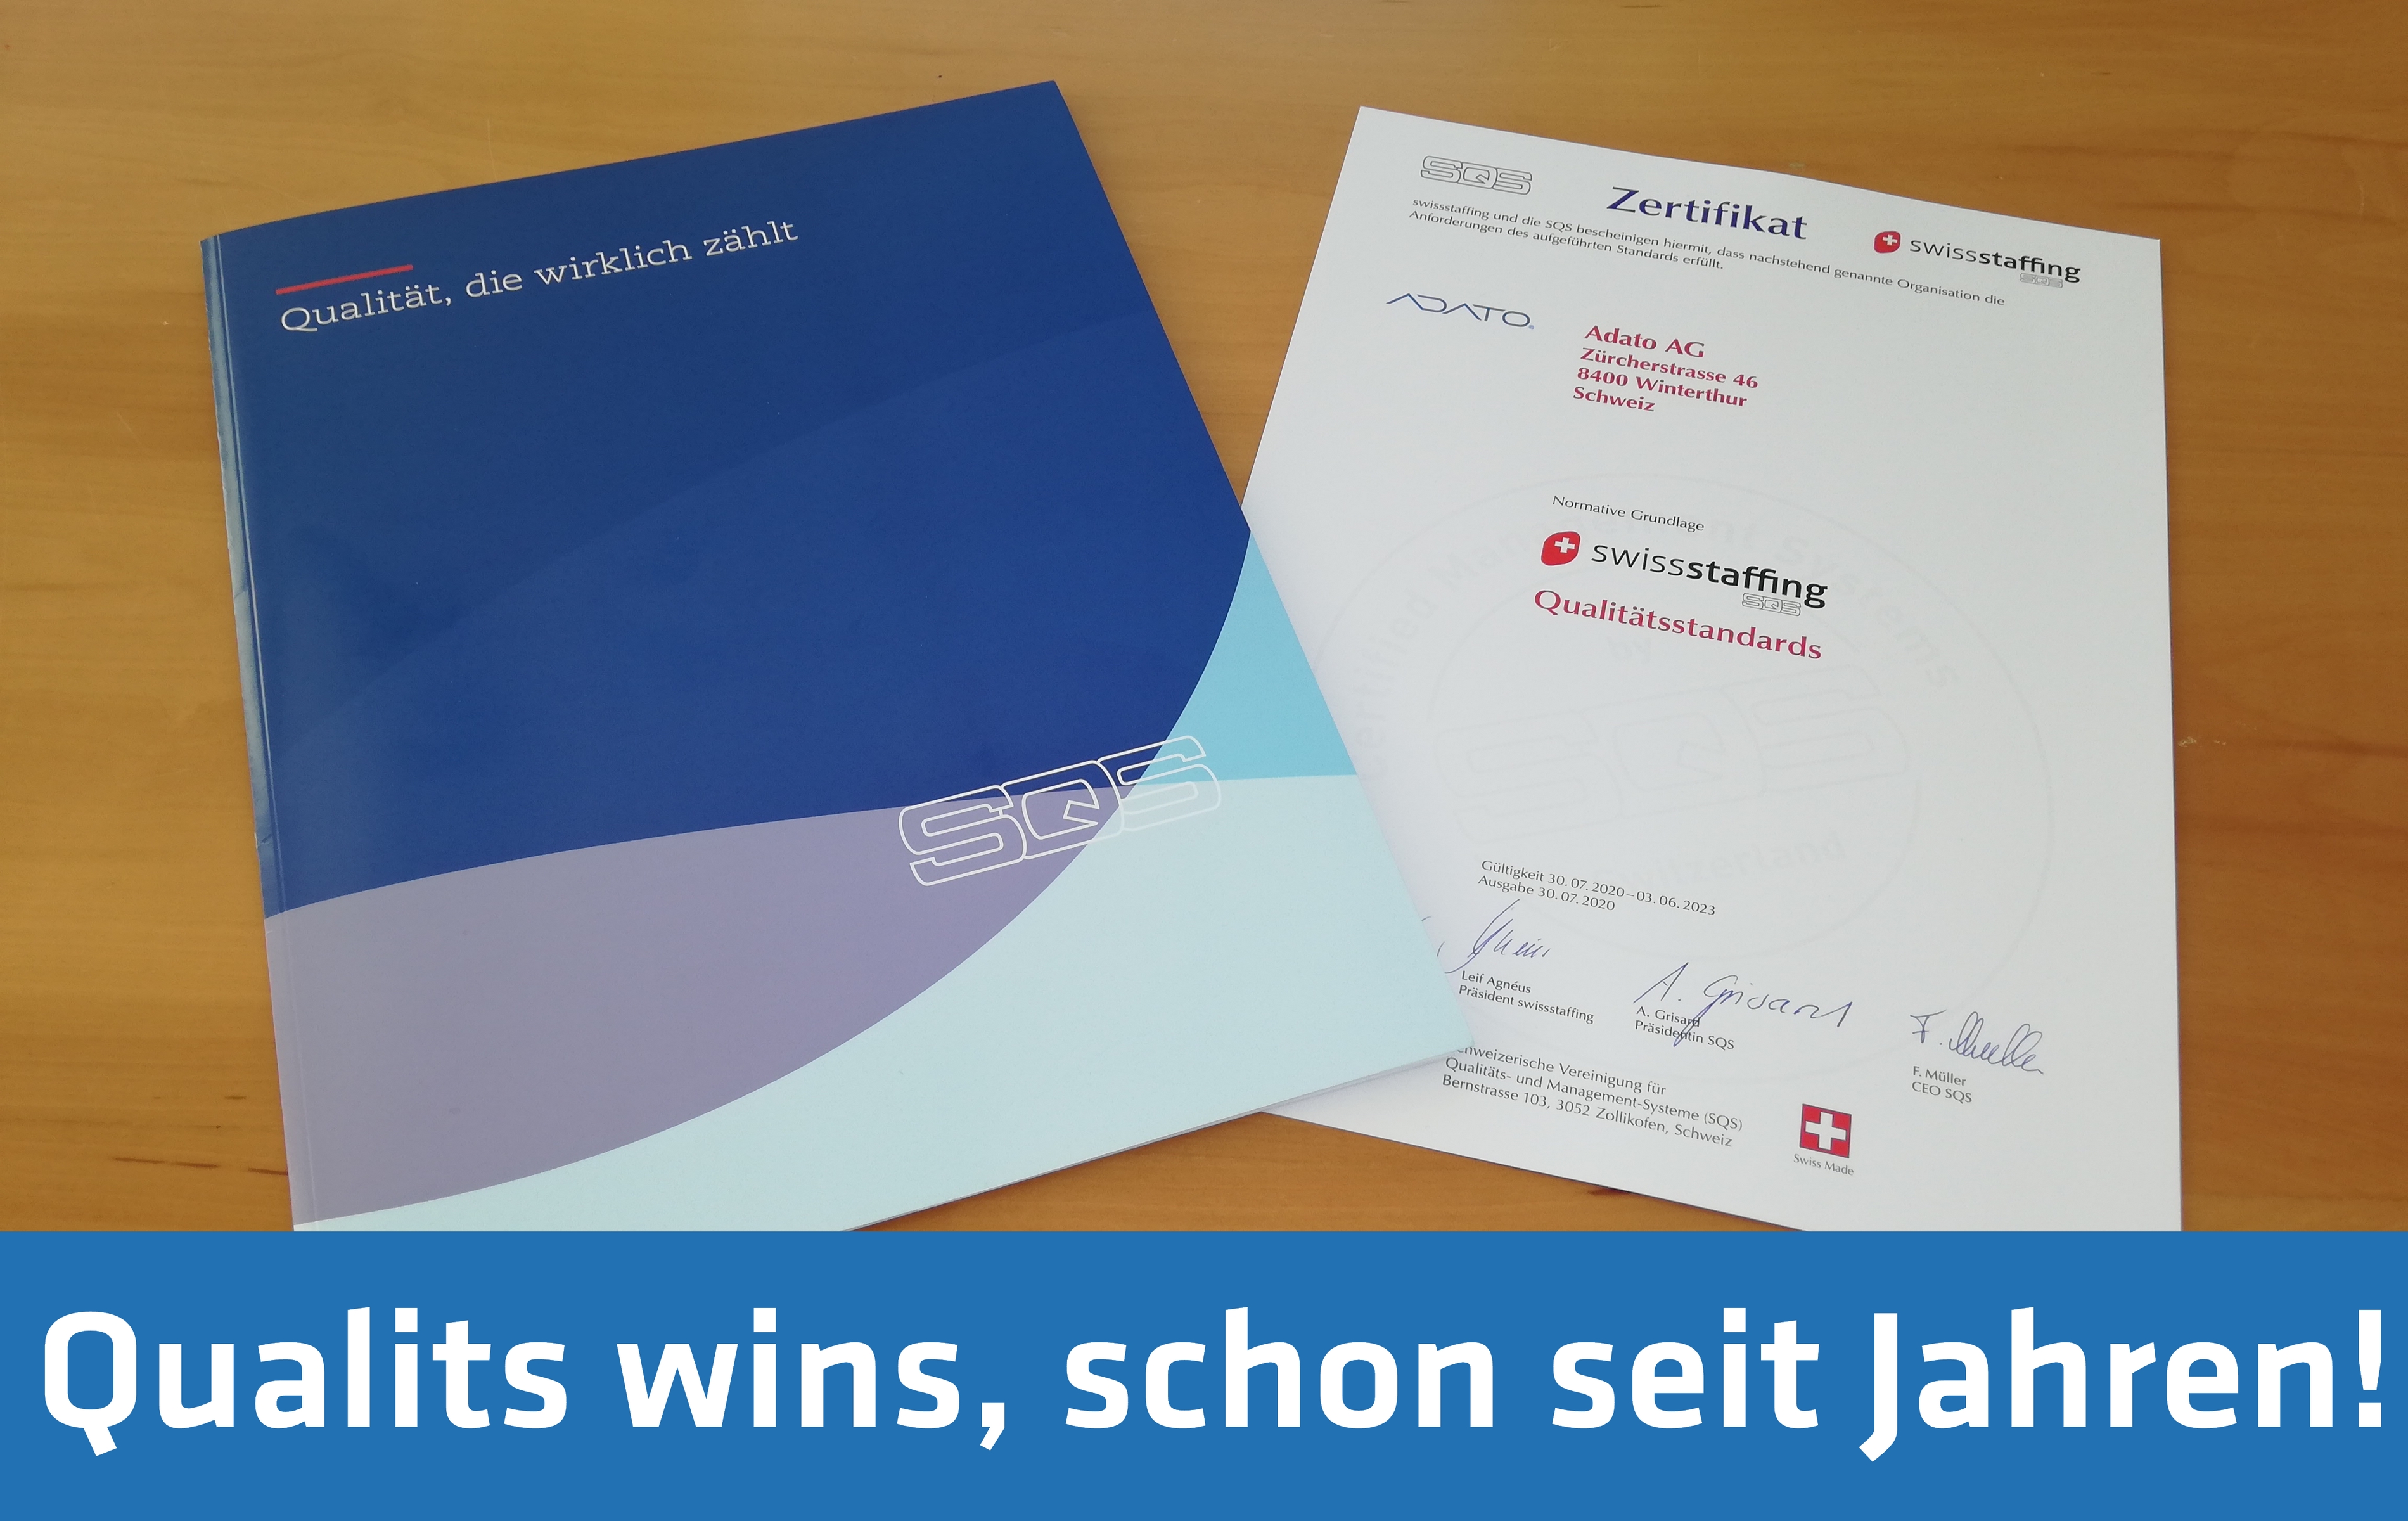 Zertifizierung von Personalsuch- und Verleihfirmen nach den Qualitätsstandards von swissstaffing (Verband der Personaldienstleister der Schweiz).